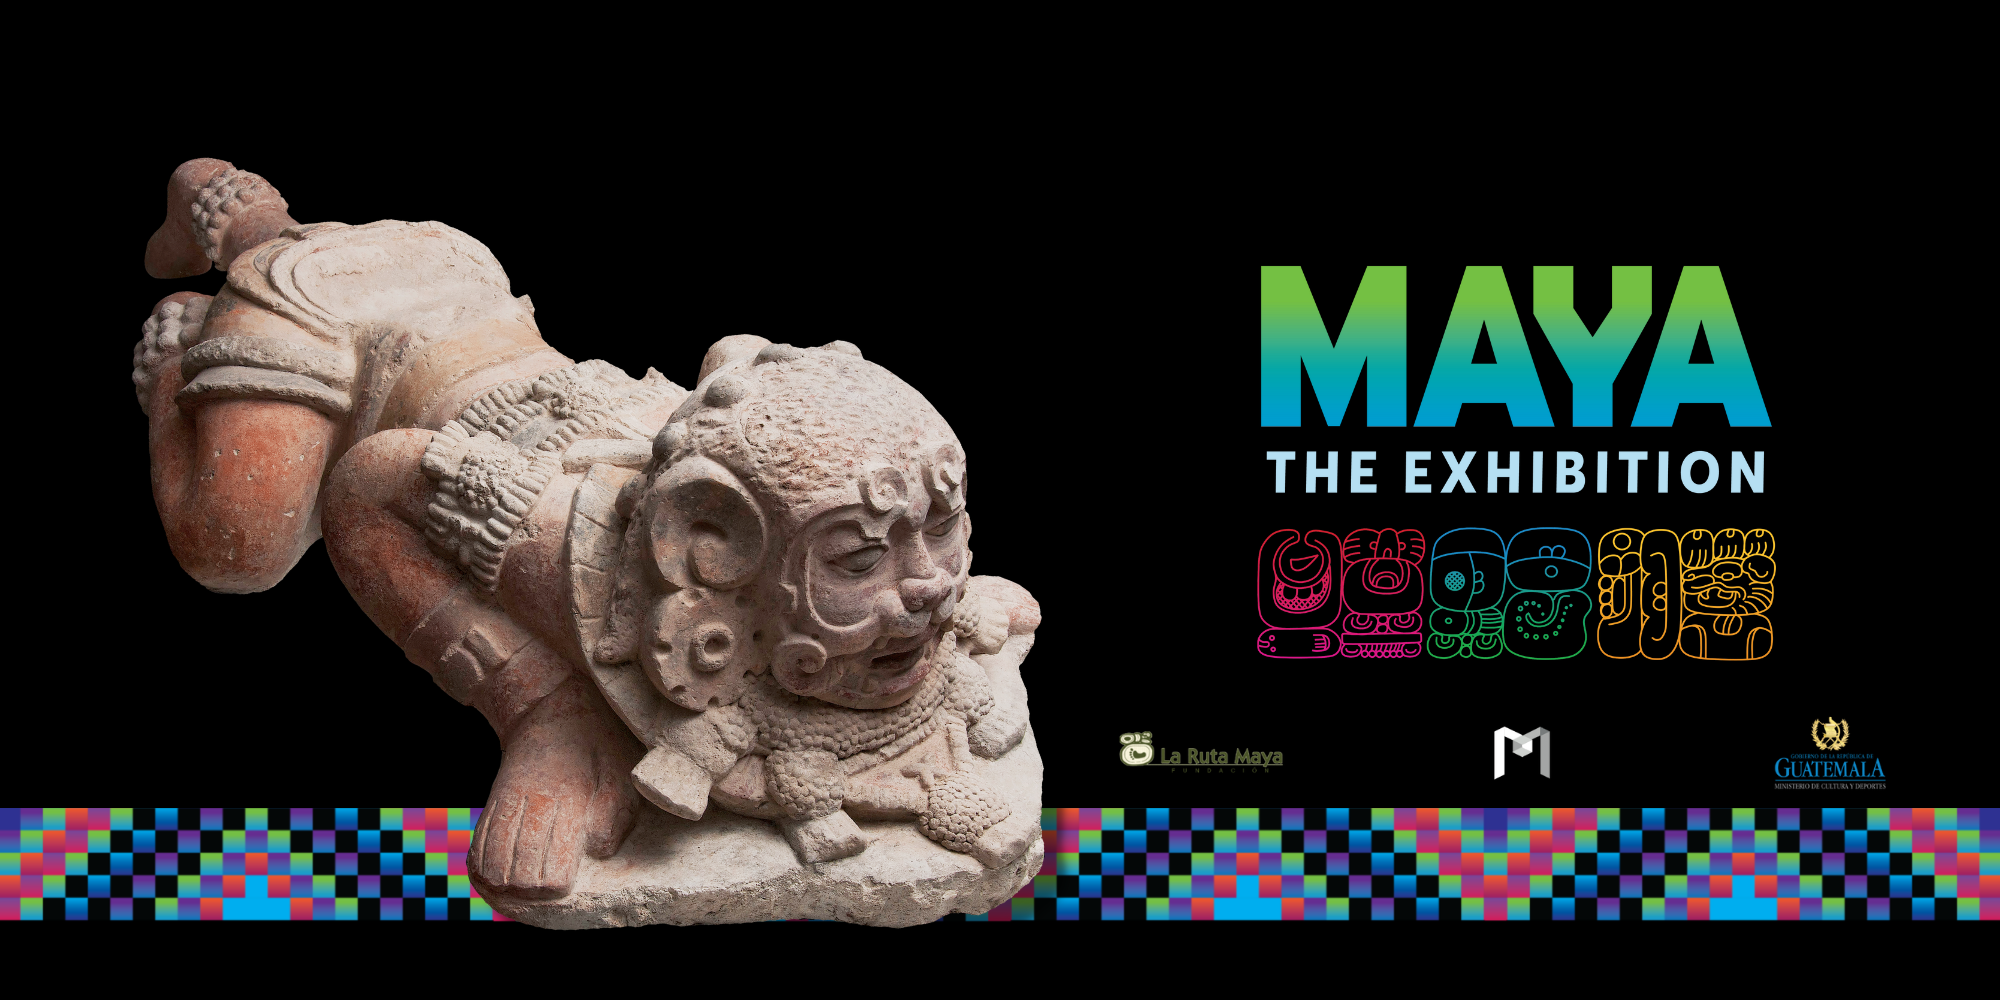 Maya hero banner with Jaguar and sponsor logos